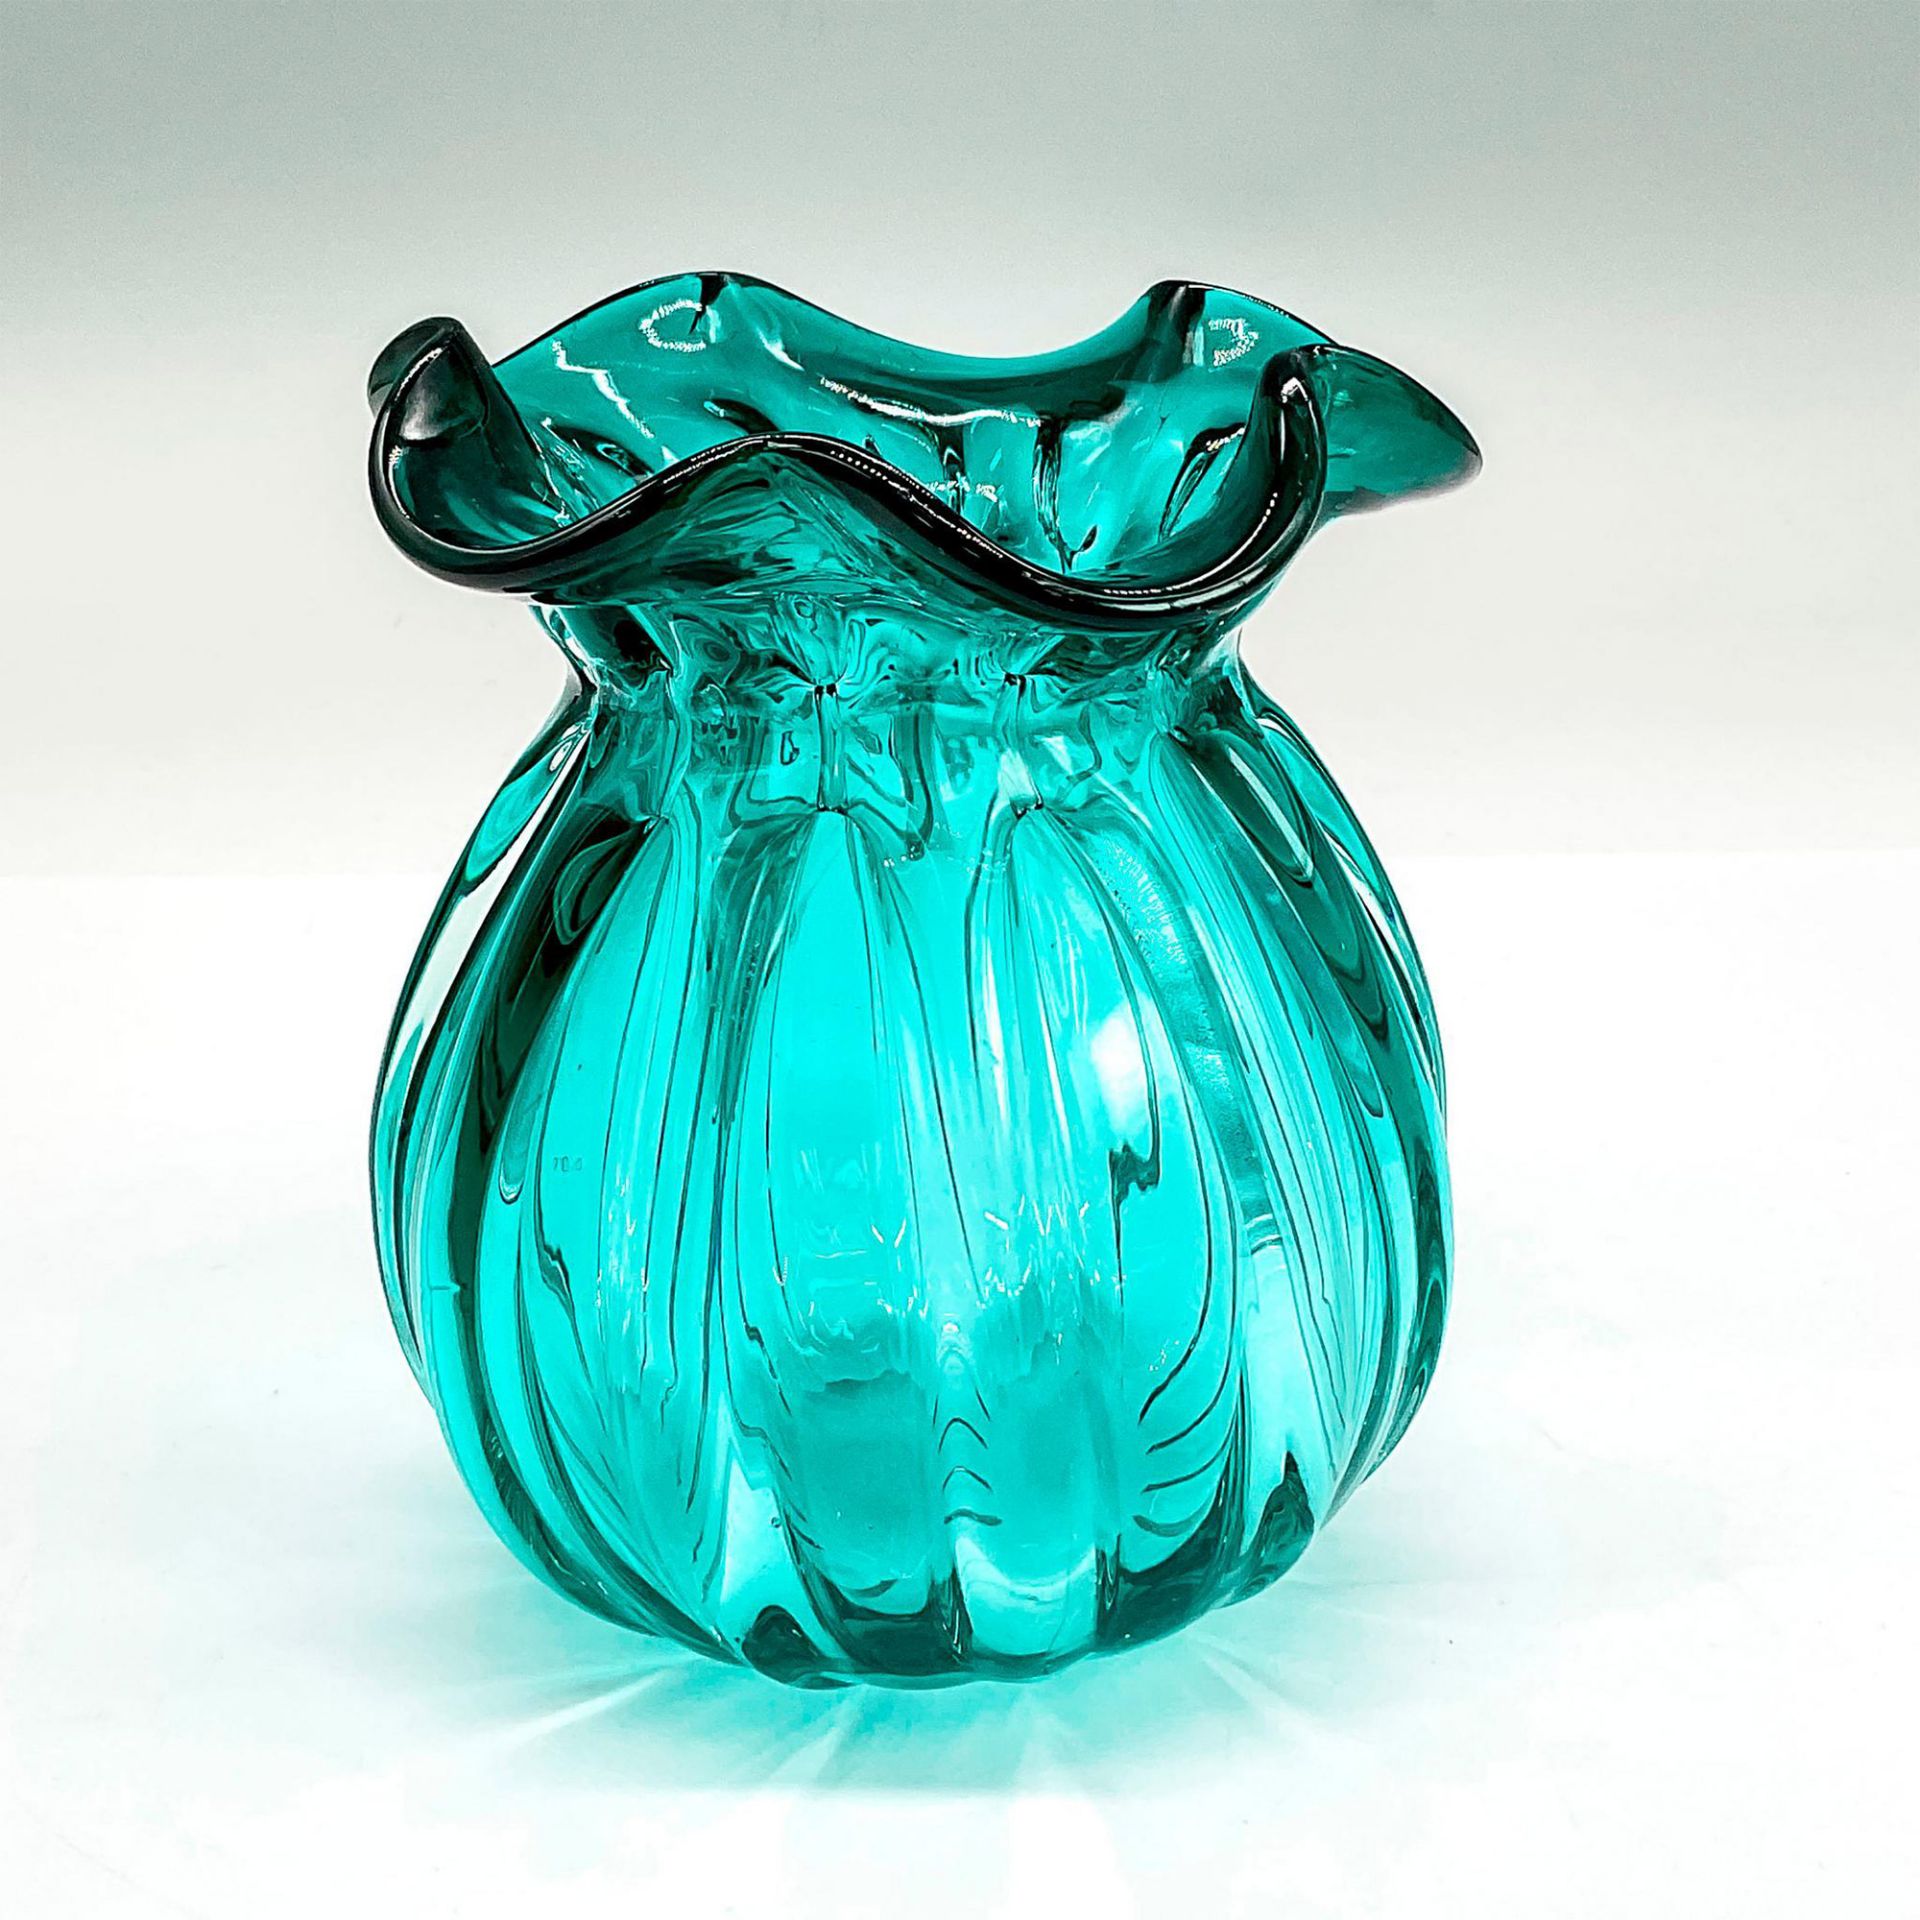 Turquoise Glass Ruffle Vase - Image 2 of 3